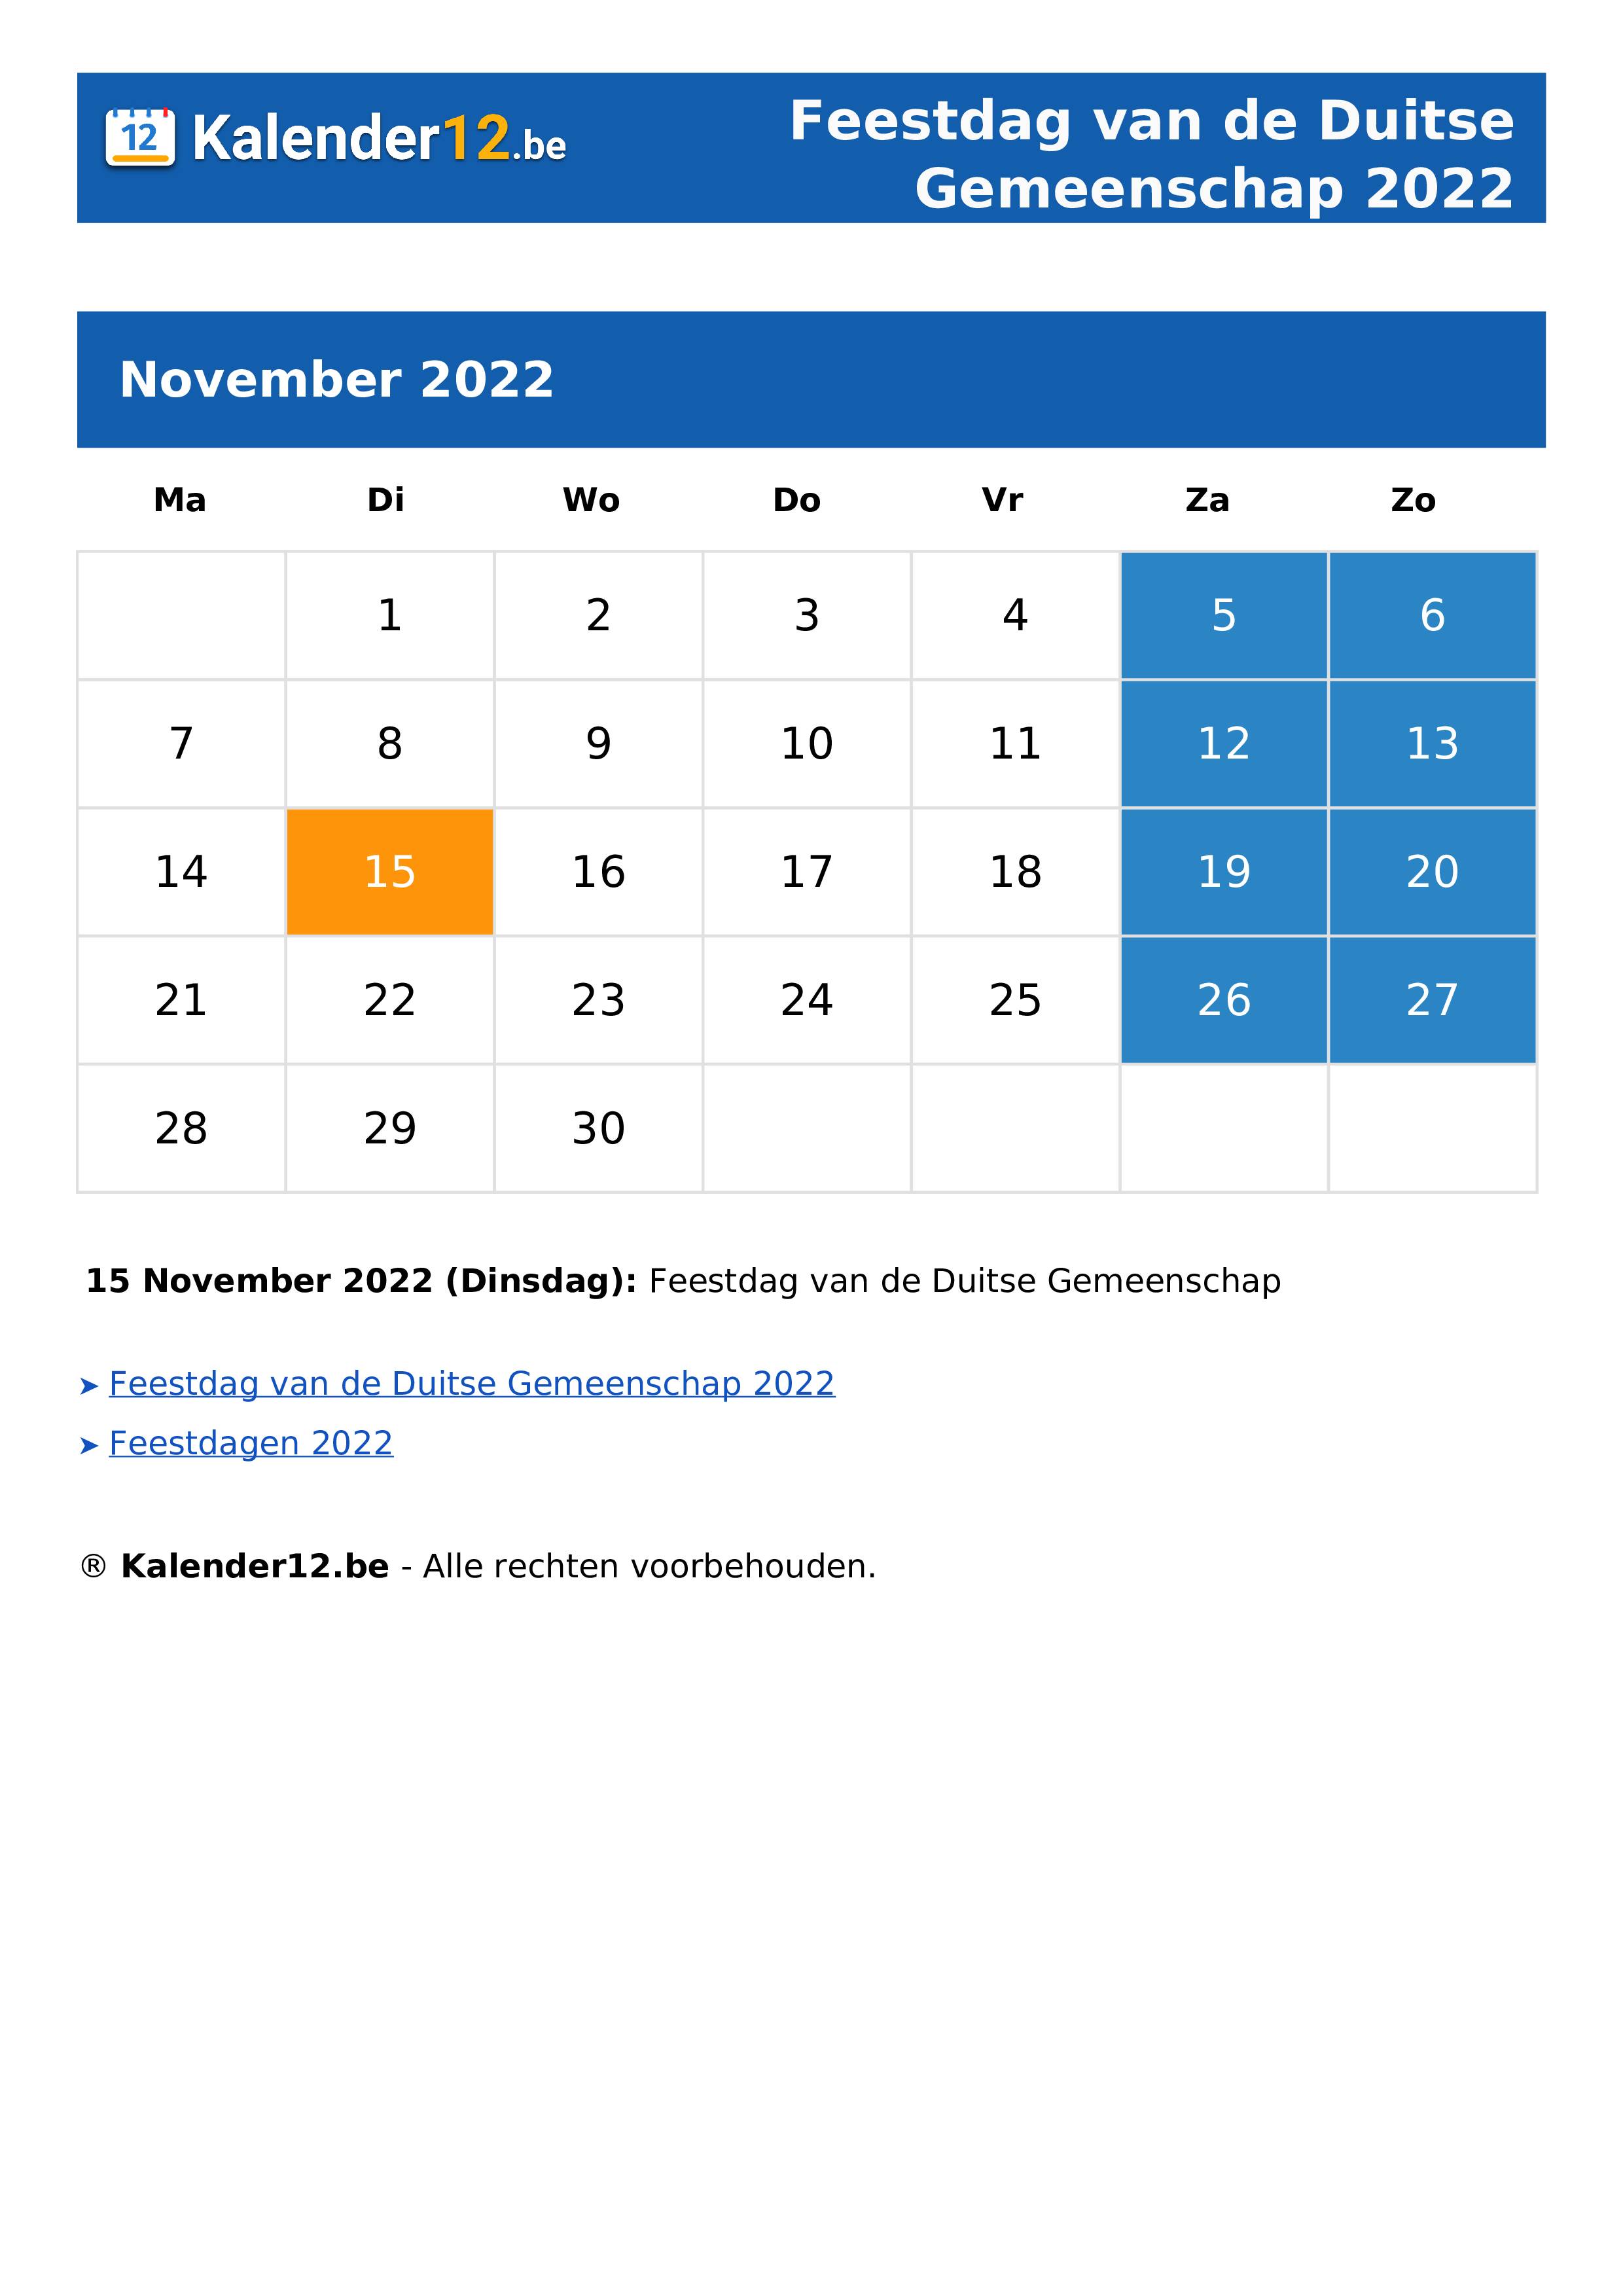 Feestdag van de Duitse Gemeenschap 2022